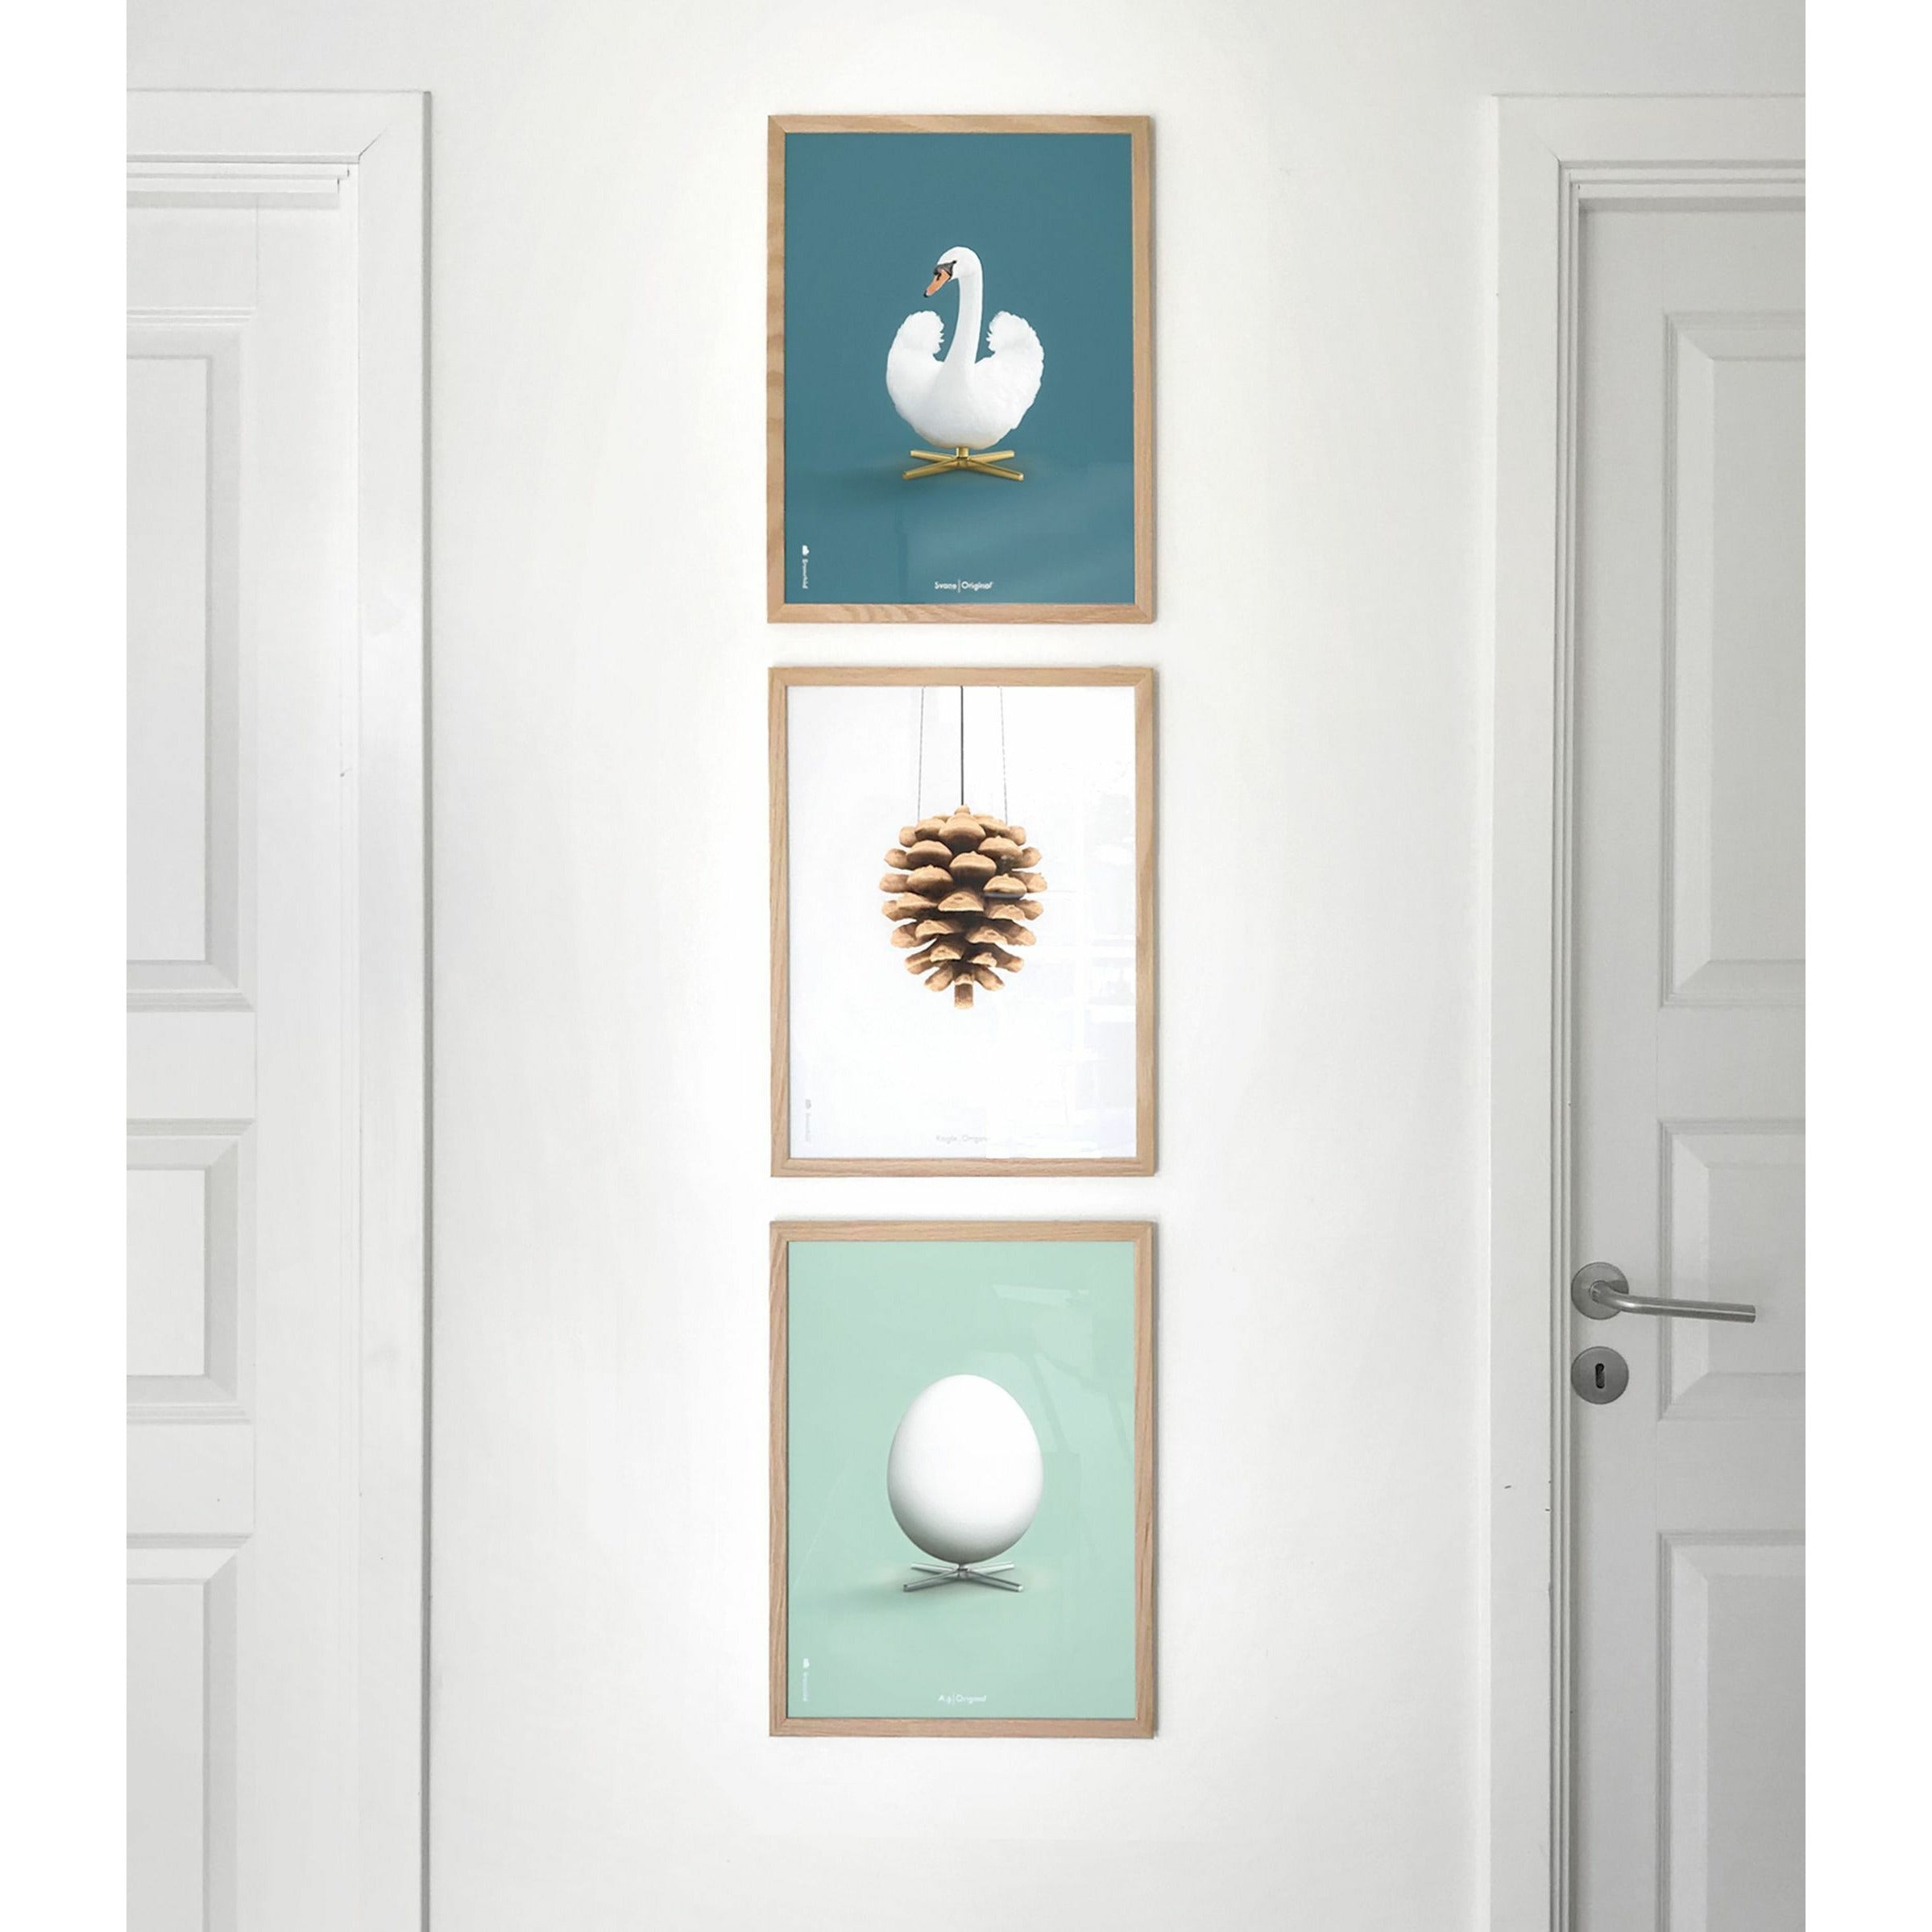 Pomysły Swan Classic Plakat, Light Wood Frame 50 x 70 cm, ropa naftowa niebieskie tło